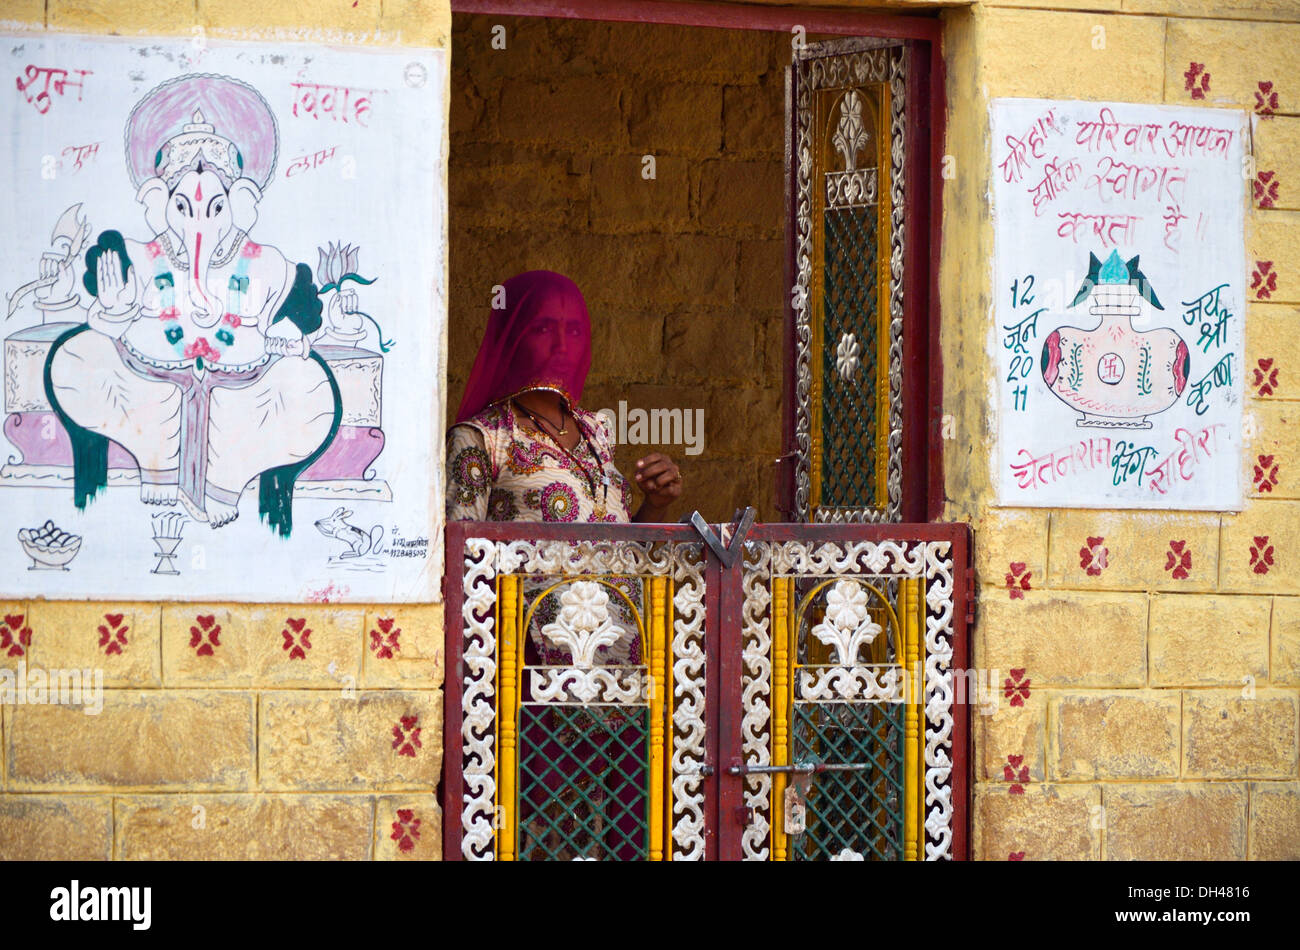 Femme en voile se tenant debout à l'intérieur la porte de chambre avec des murs peints en Asie Inde Rajasthan Banque D'Images